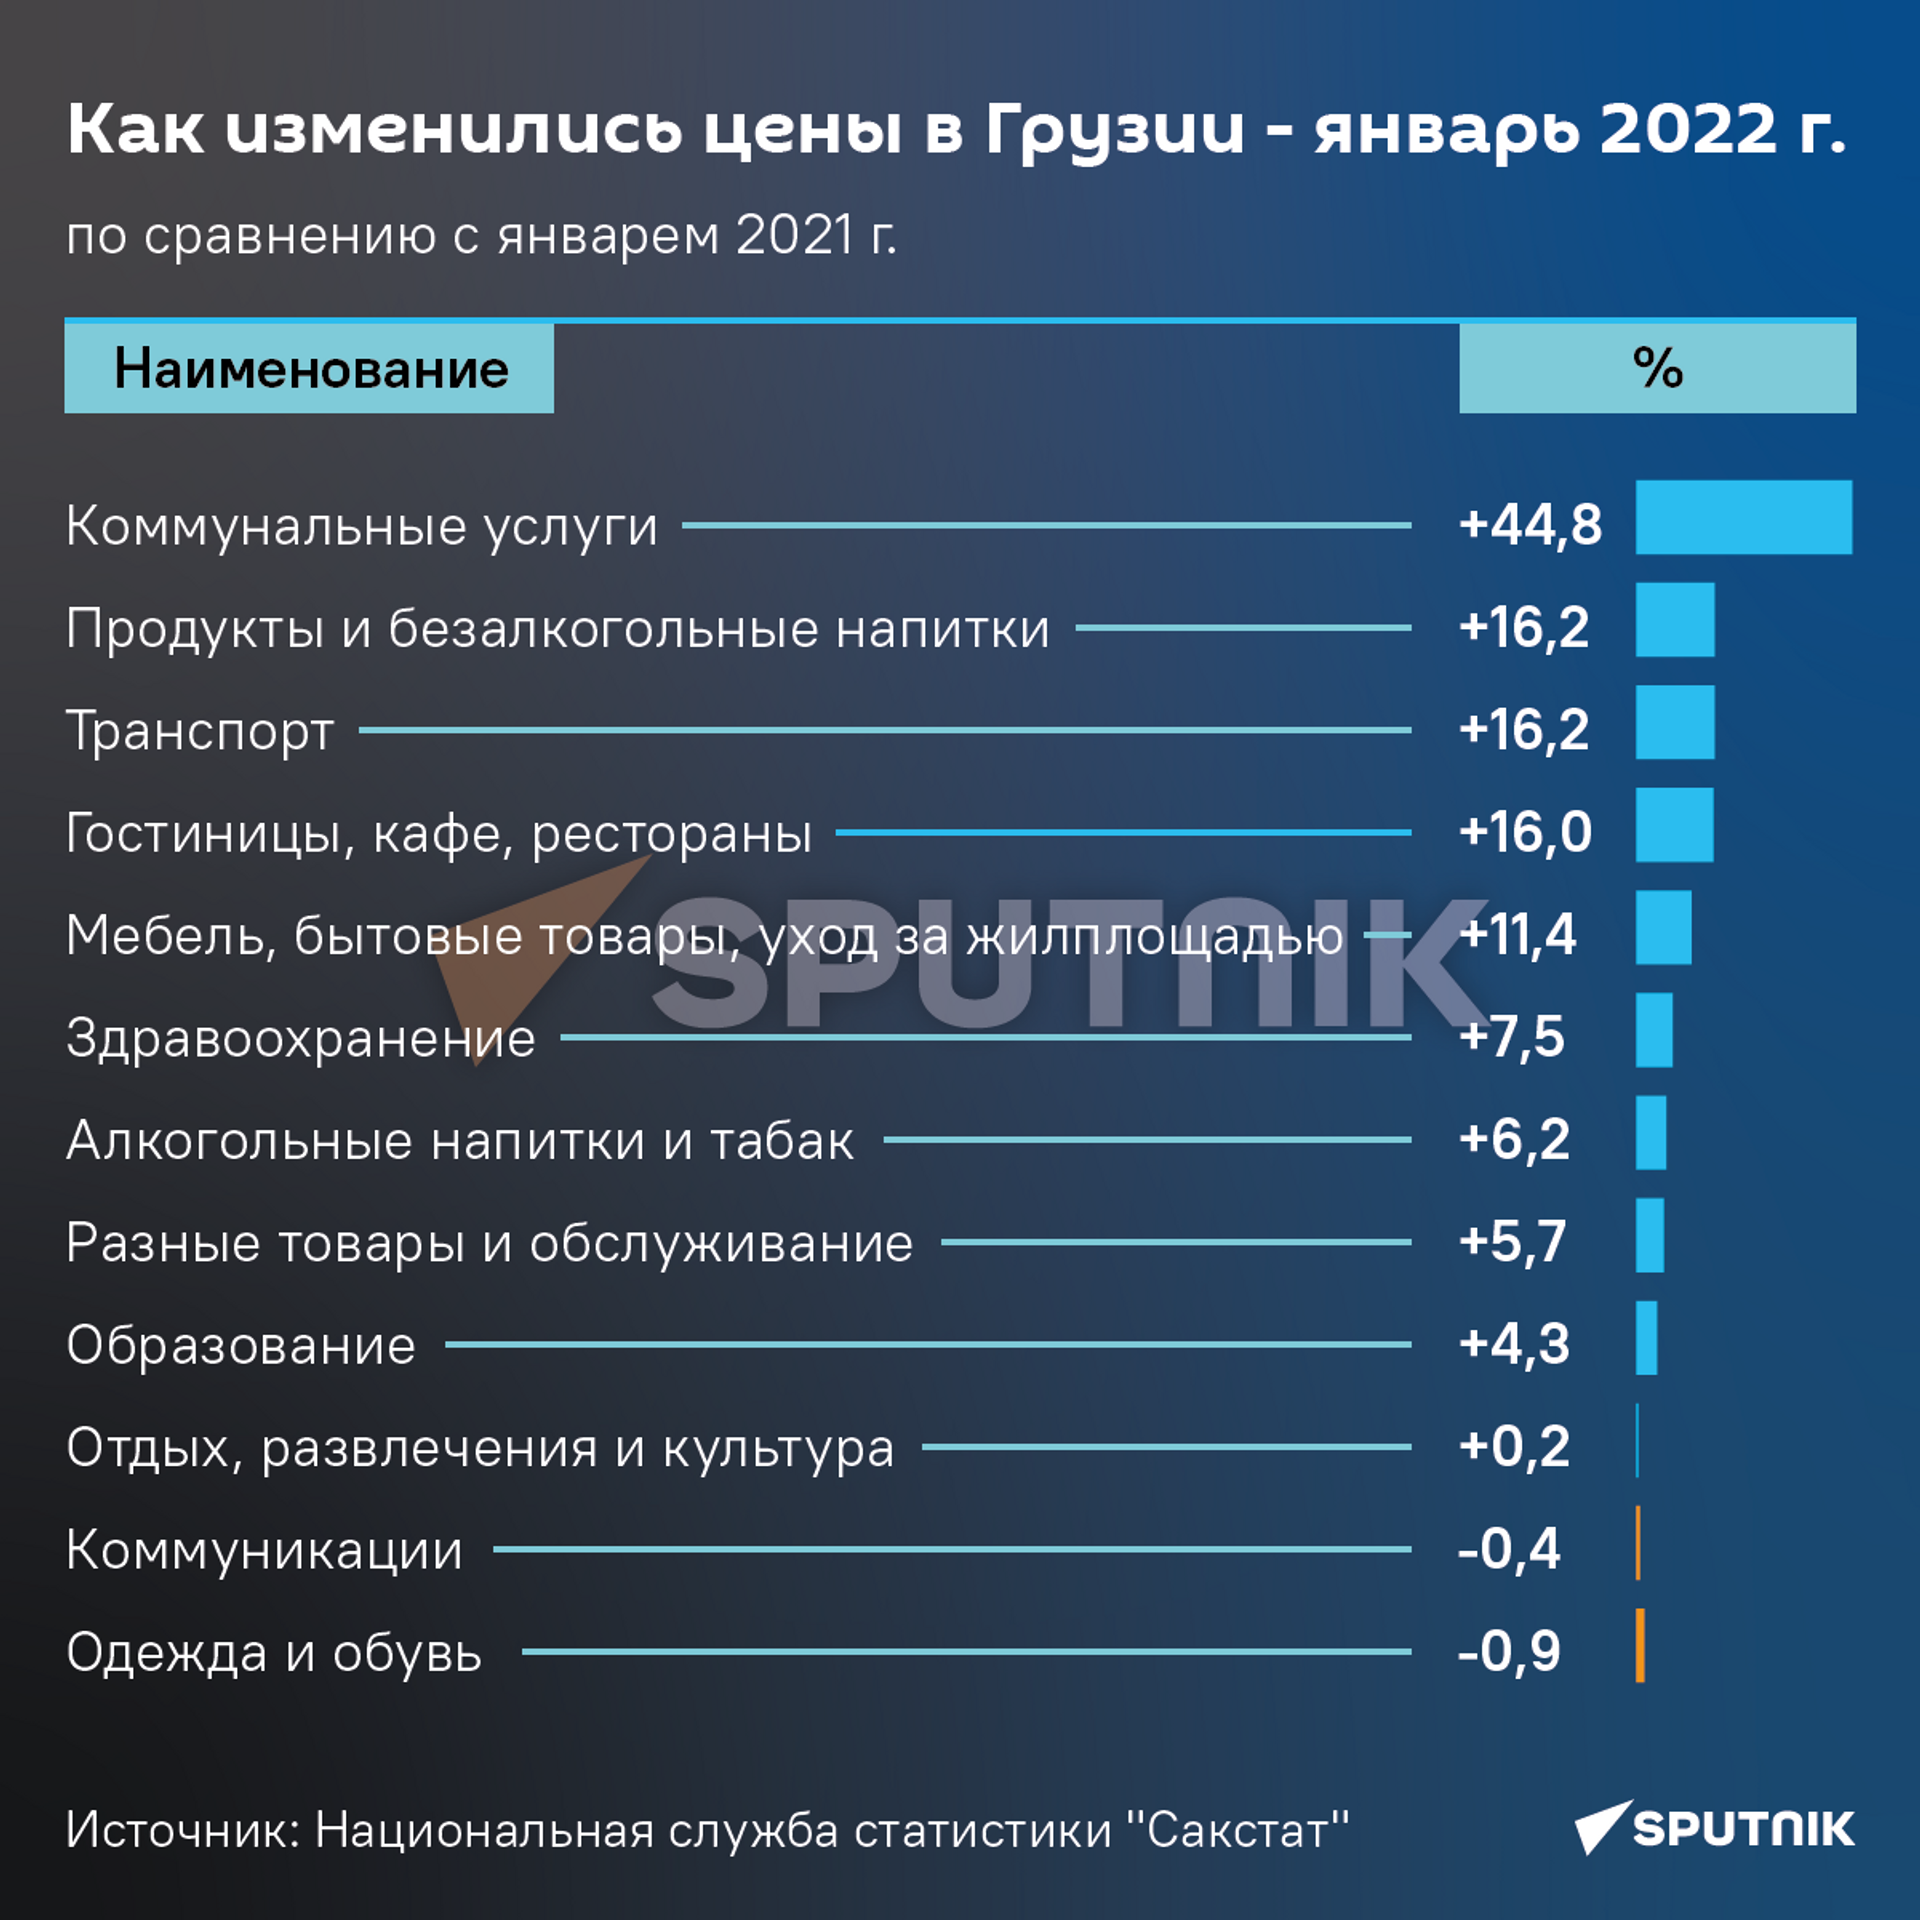 Как изменились цены в Грузии - январь 2022 года к январю 2021 года - Sputnik Грузия, 1920, 16.02.2022